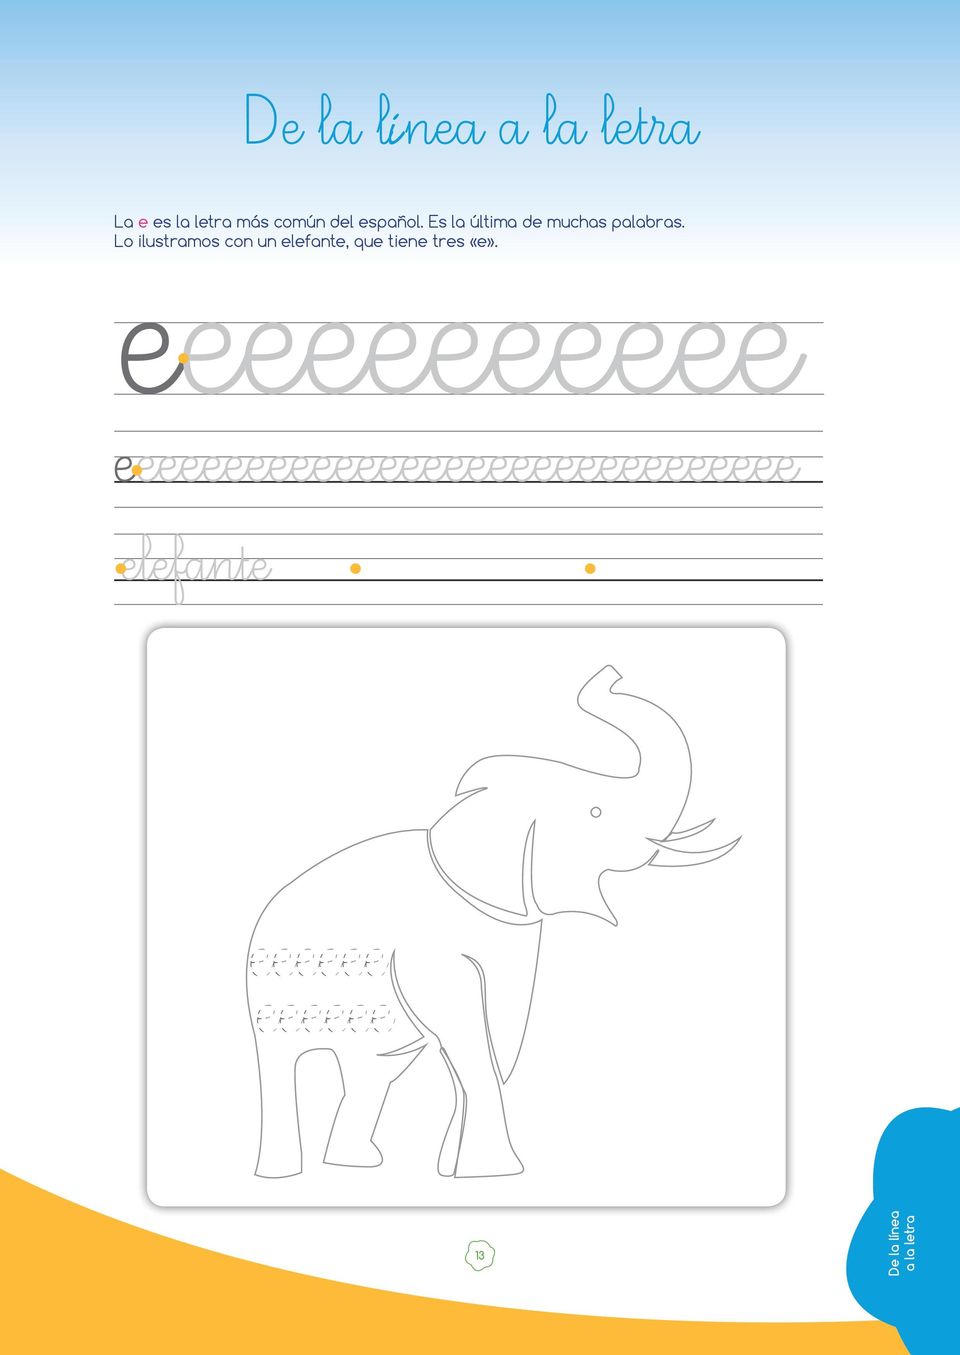 Lo ilustramos con un elefante, que tiene tres «e».